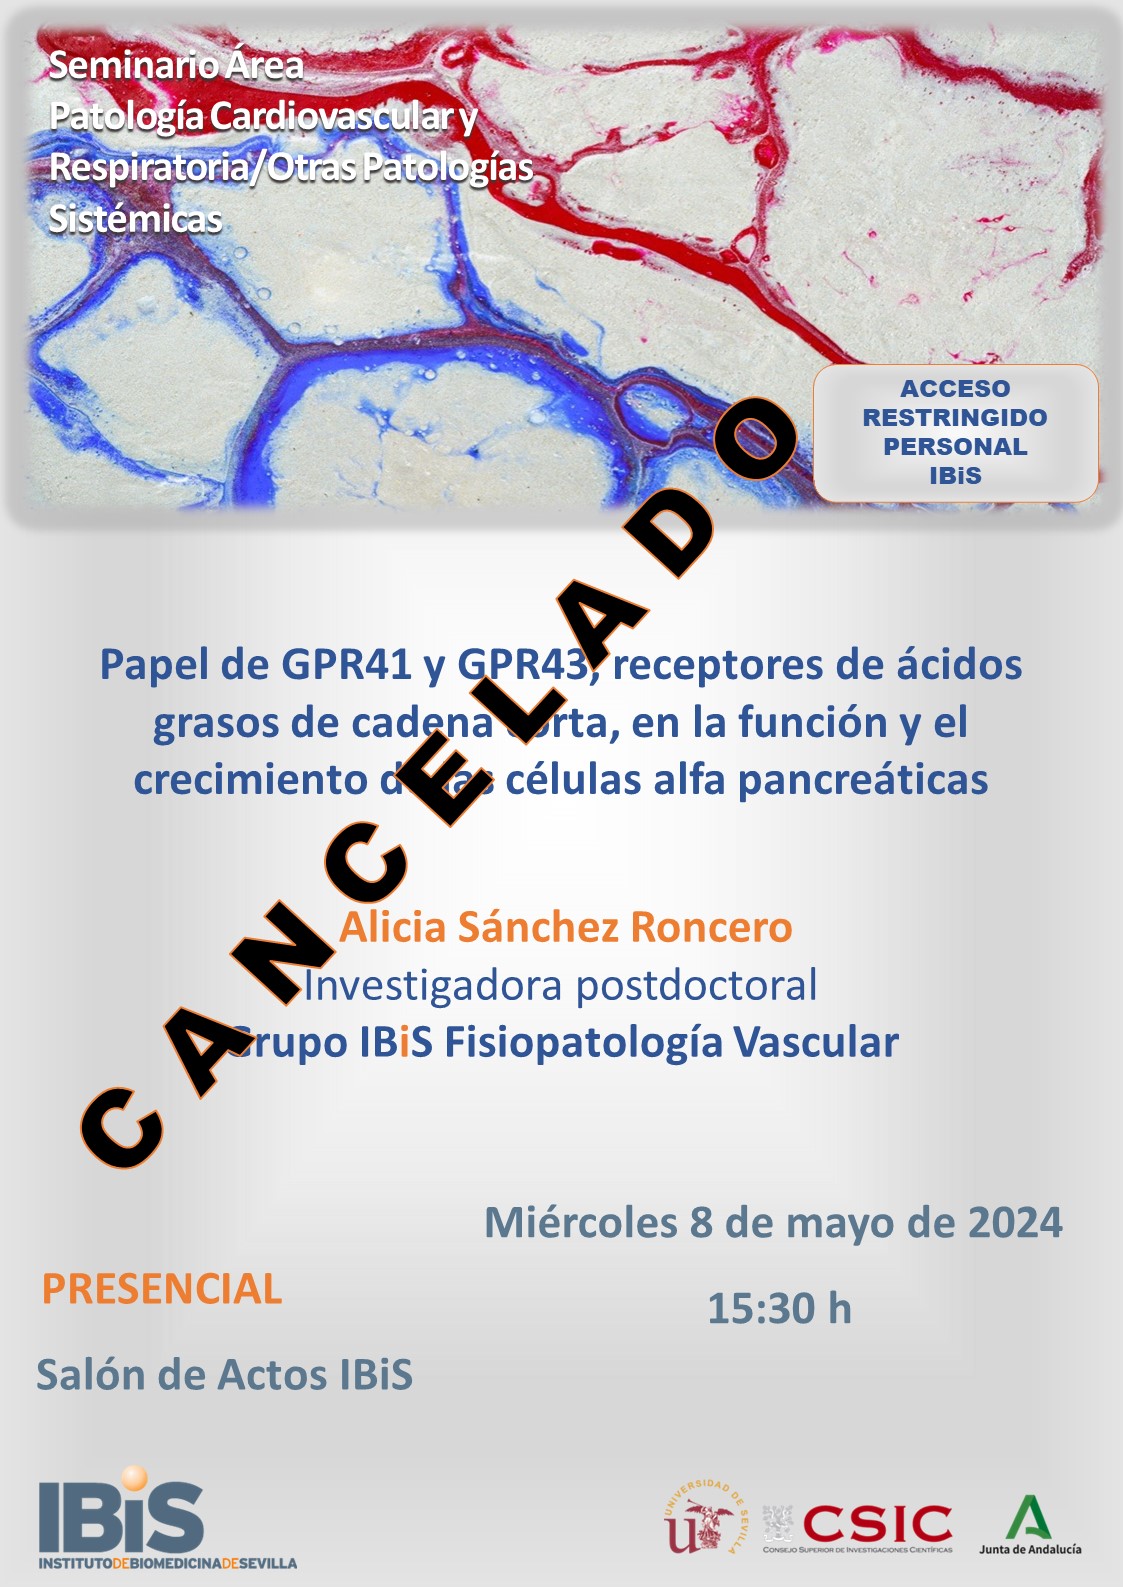 Poster: Papel de GPR41 y GPR43, receptores de ácidos grasos de cadena corta, en la función y el crecimiento de las células alfa pancreáticas